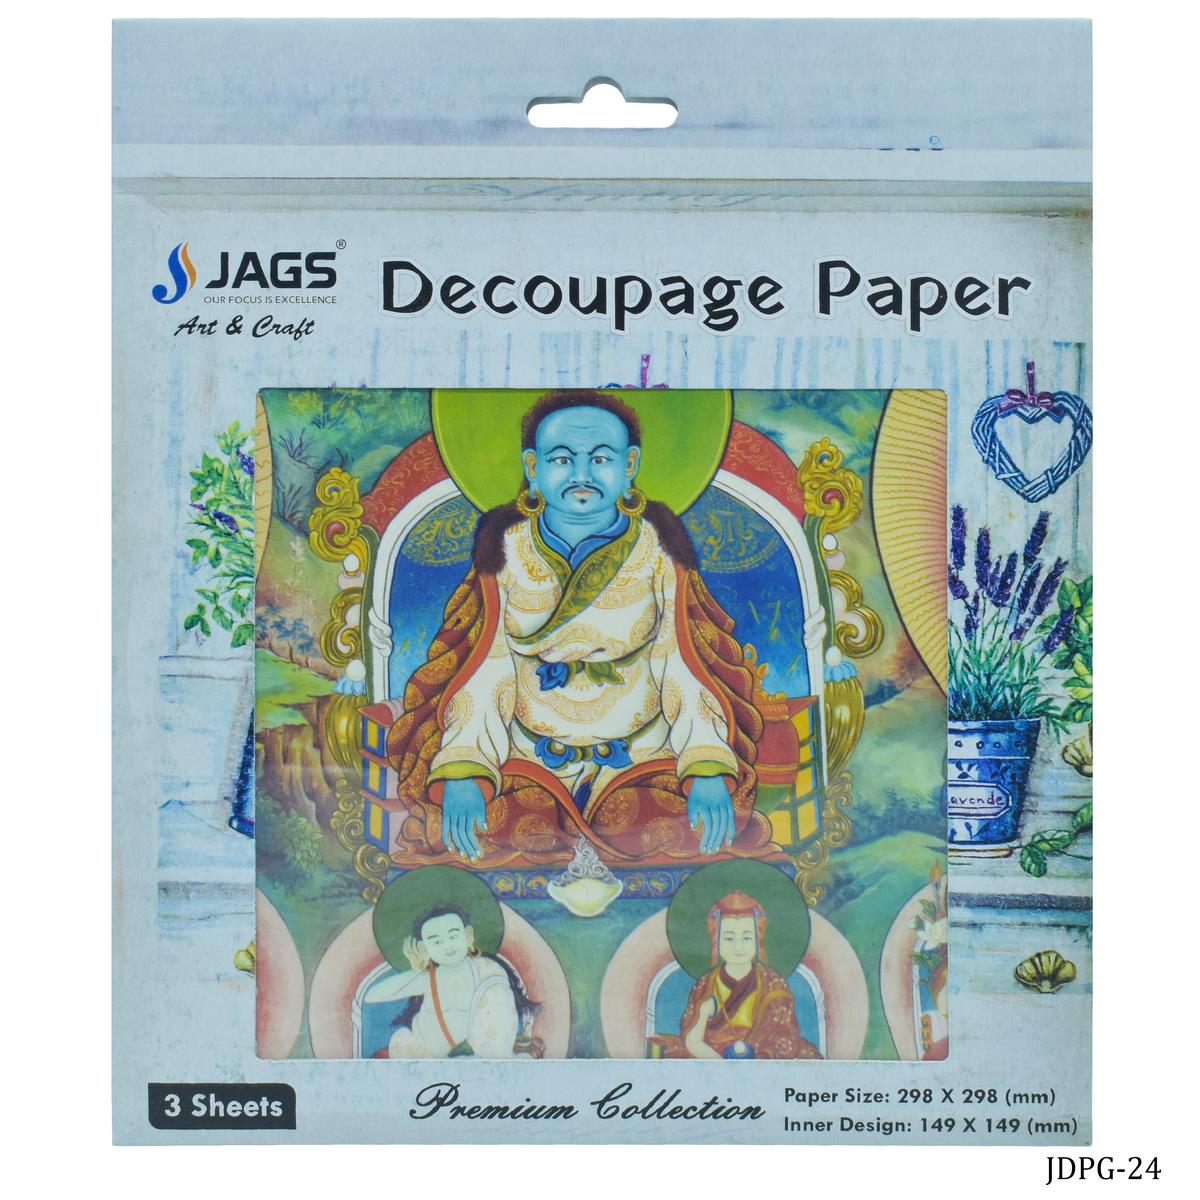 jags-mumbai Decoupage Jags Decoupage Paper Chinese Zambala BuddhaJDPG-24